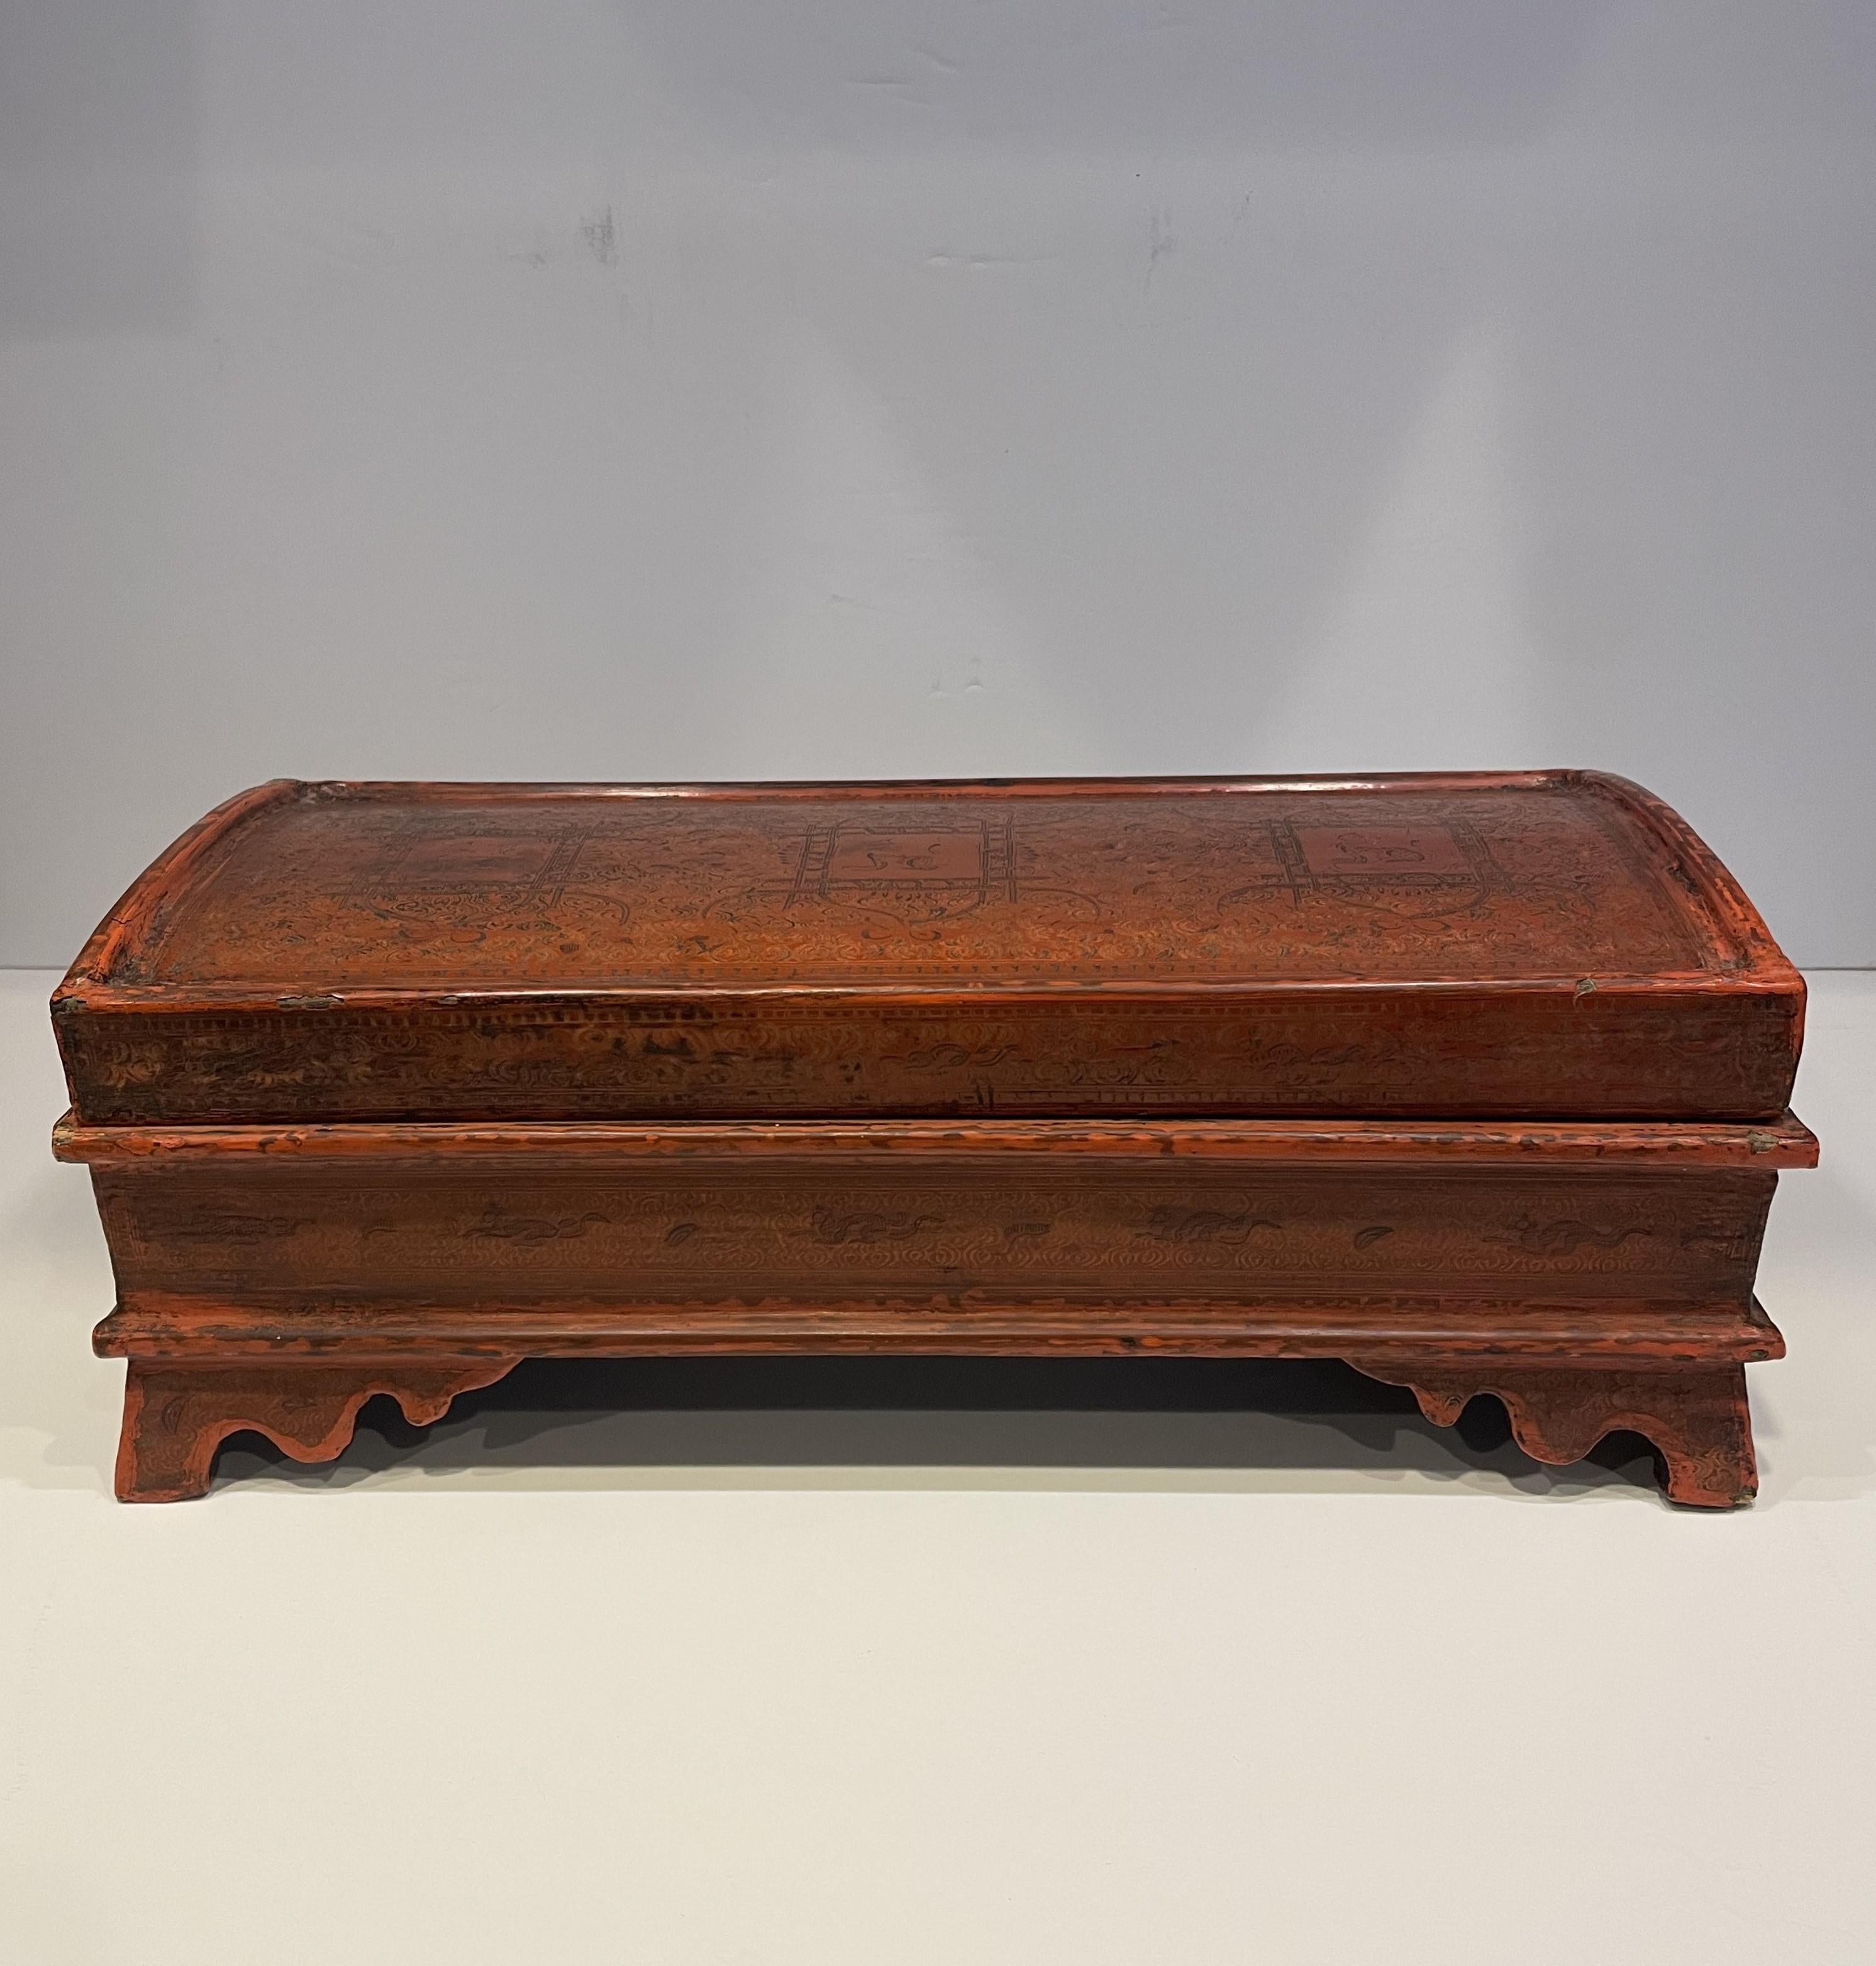 Boîte ancienne en bois peint à la main et laqué avec plateau amovible, originaire d'Indonésie. Les compartiments intérieurs sont largement dimensionnés. Il y a quelques petits endroits où la peinture s'est détachée pour révéler le bois, ce qui